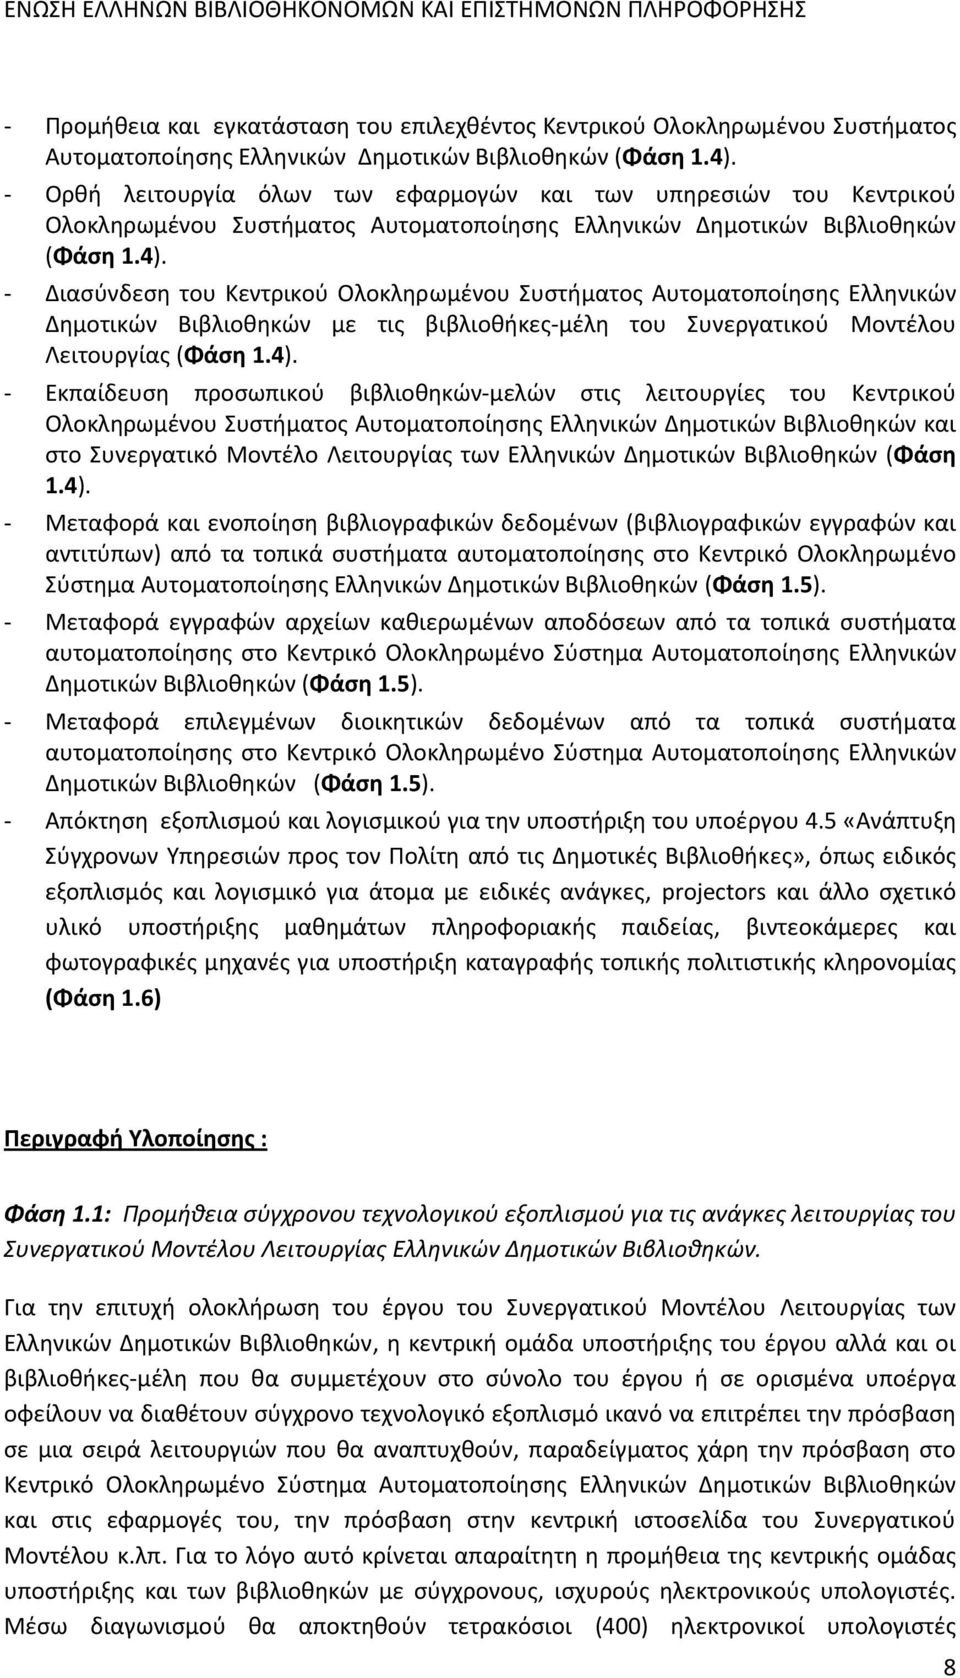 Διασύνδεση του Κεντρικού Ολοκληρωμένου Συστήματος Αυτοματοποίησης Ελληνικών Δημοτικών Βιβλιοθηκών με τις βιβλιοθήκες μέλη του Συνεργατικού Μοντέλου Λειτουργίας (Φάση 1.4).